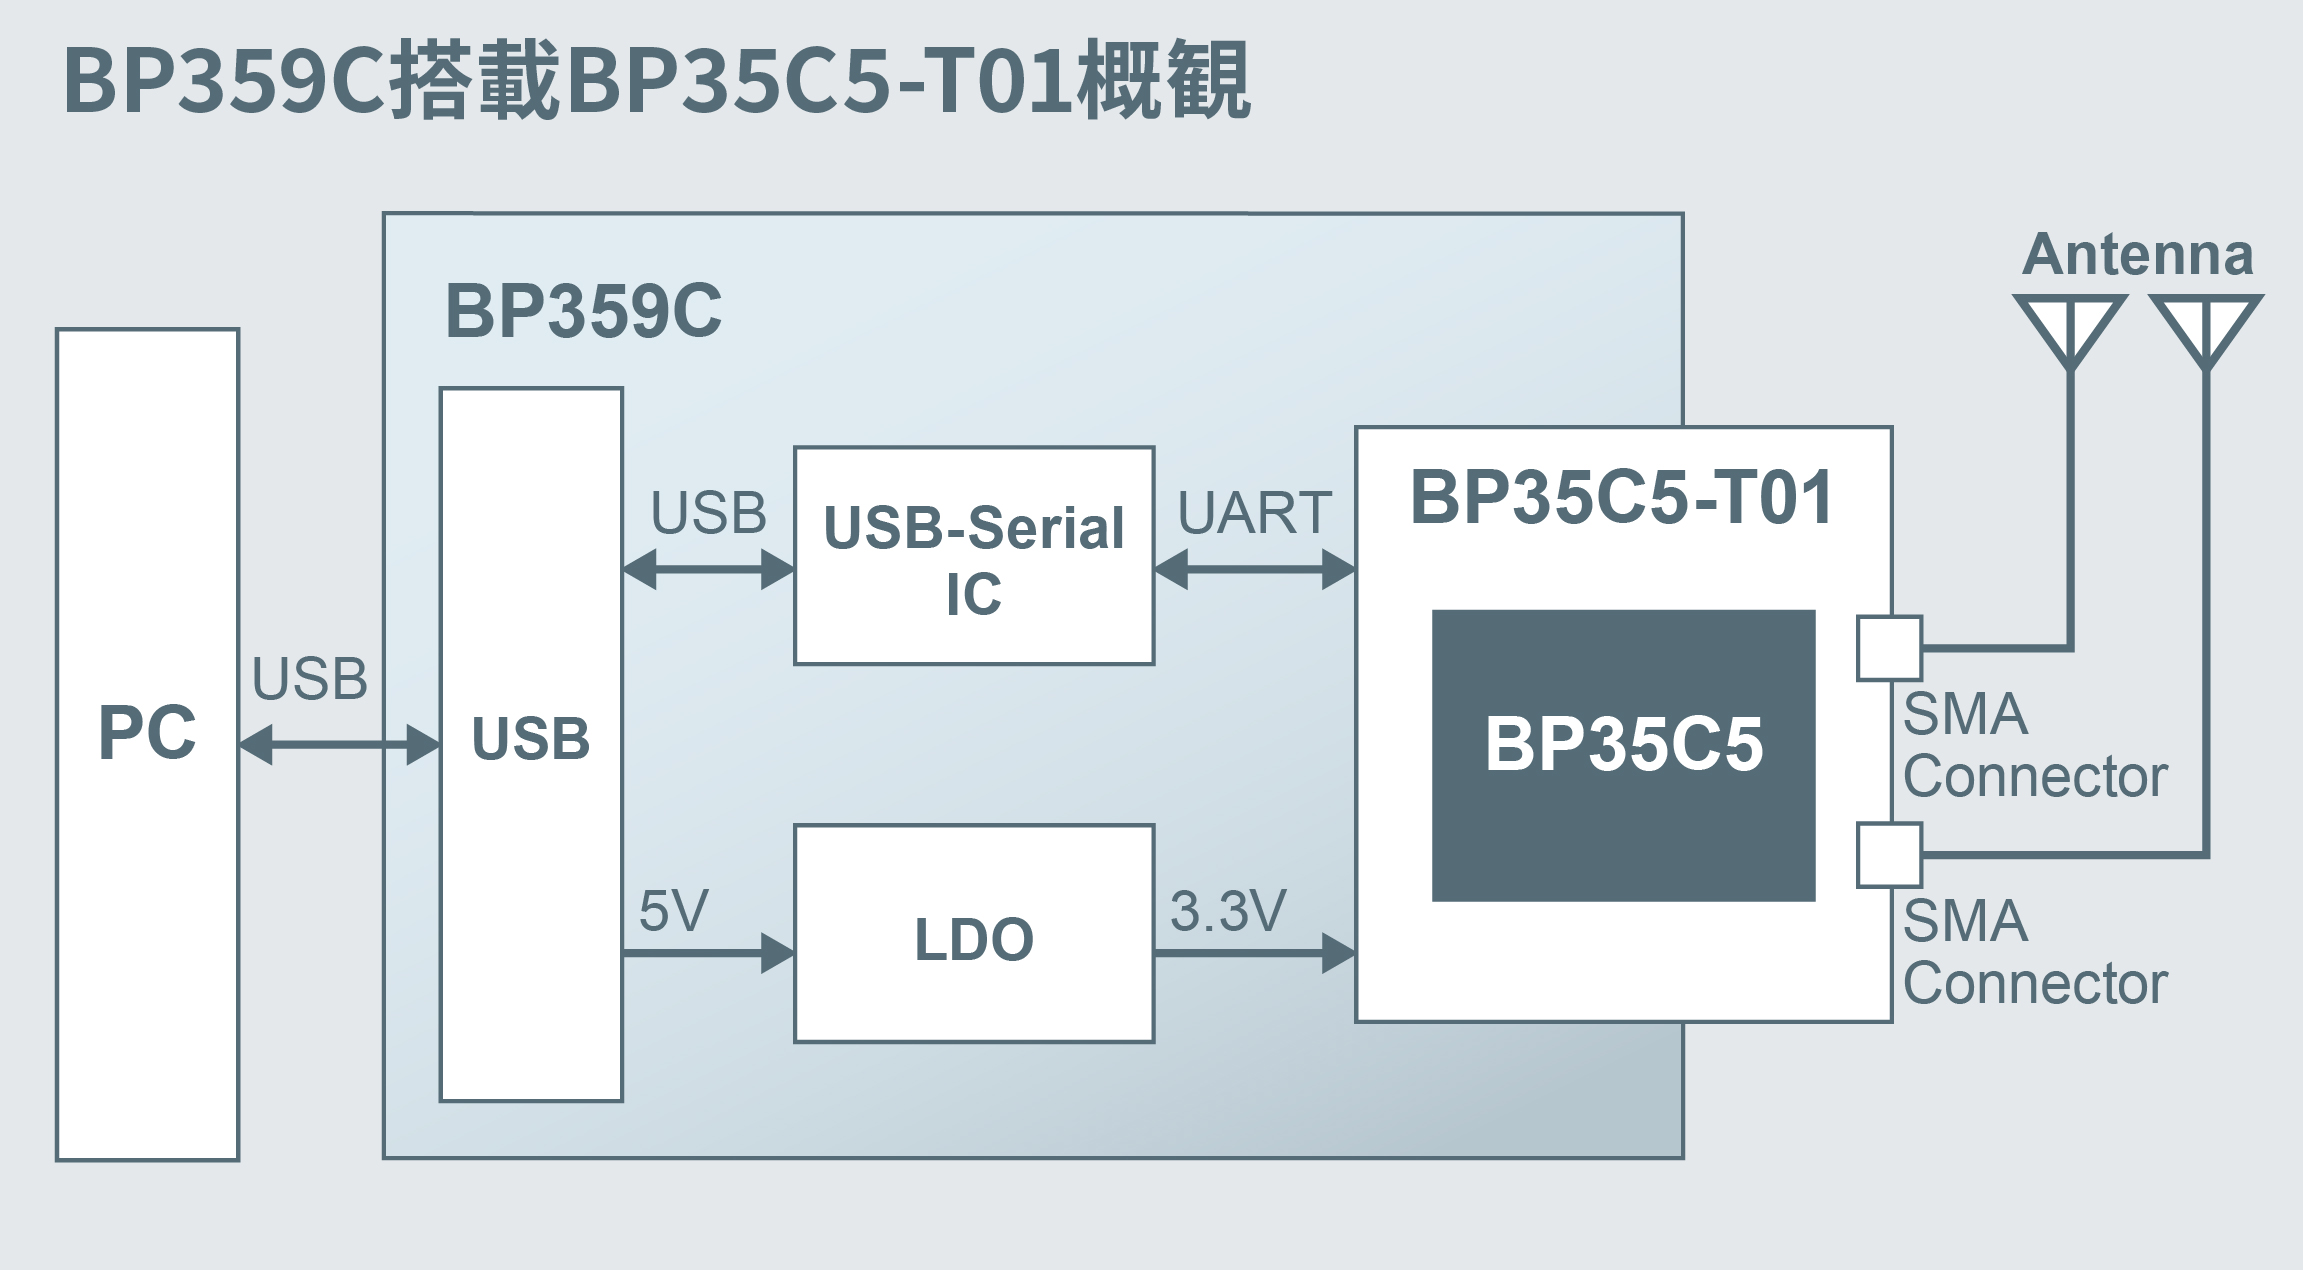 BP359C搭載BP35C5-T01概観